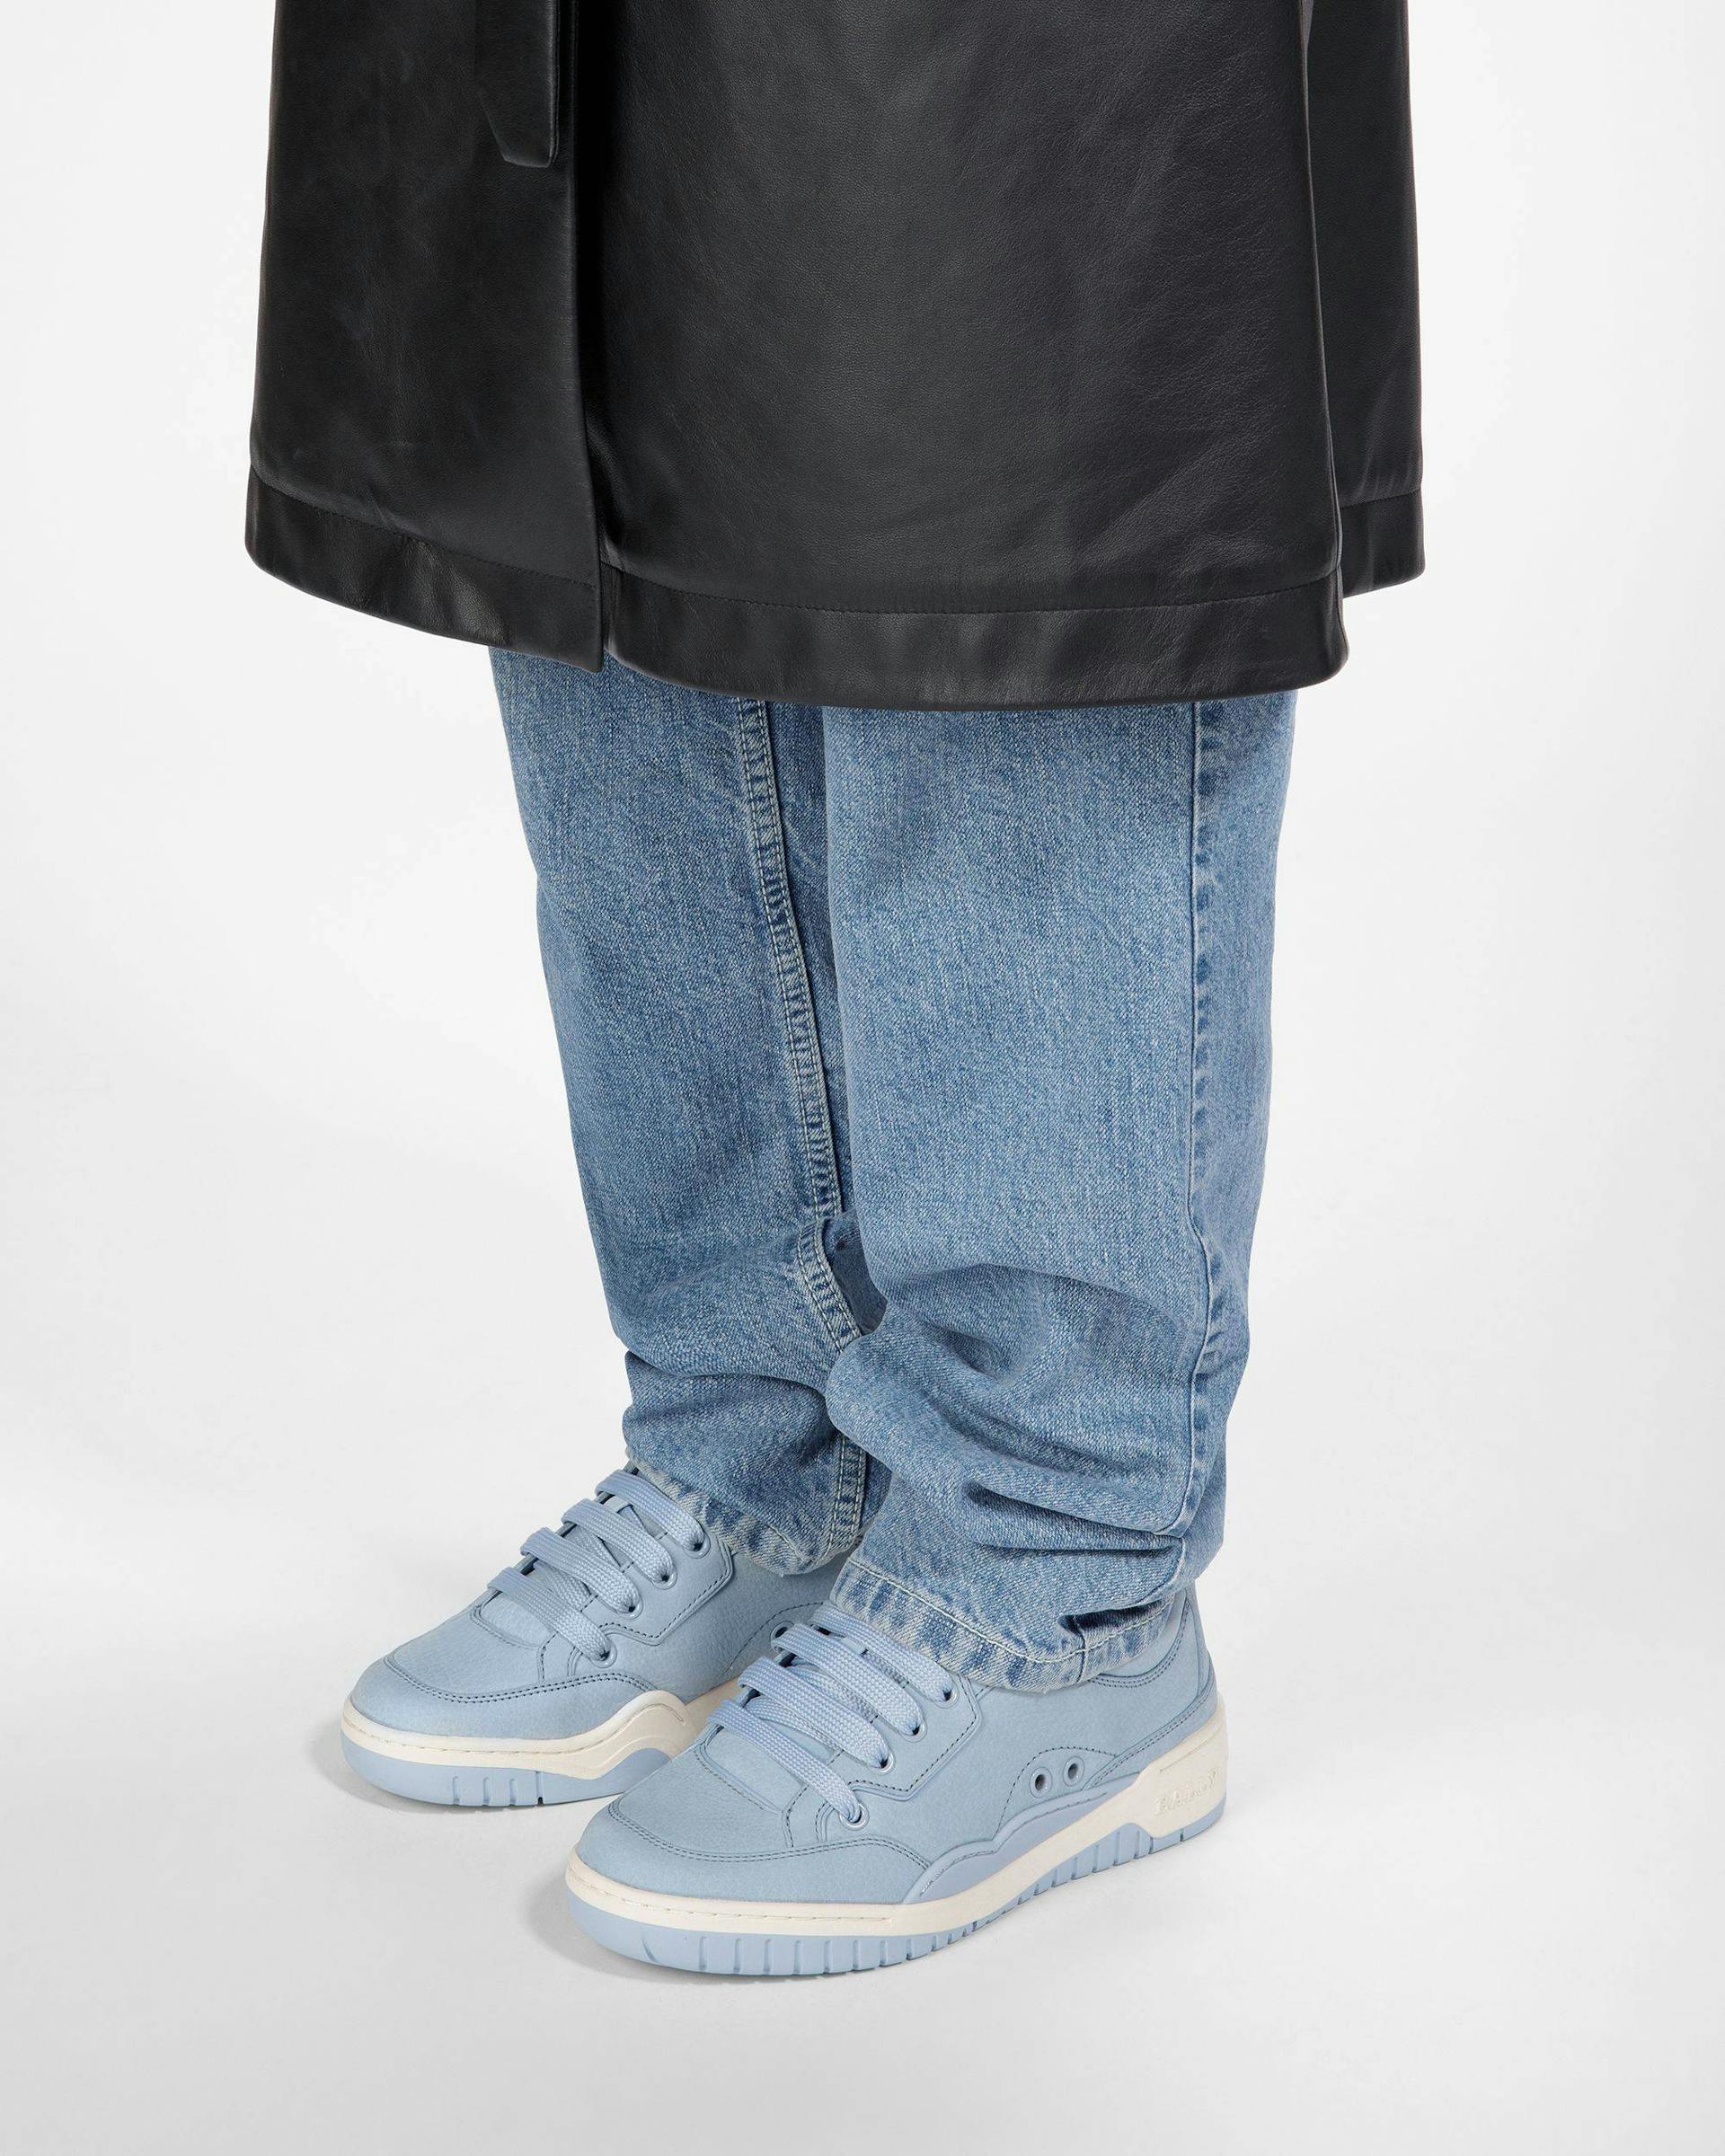 Kiro Leather Sneakers In Light Blue - Women's - Bally - 07